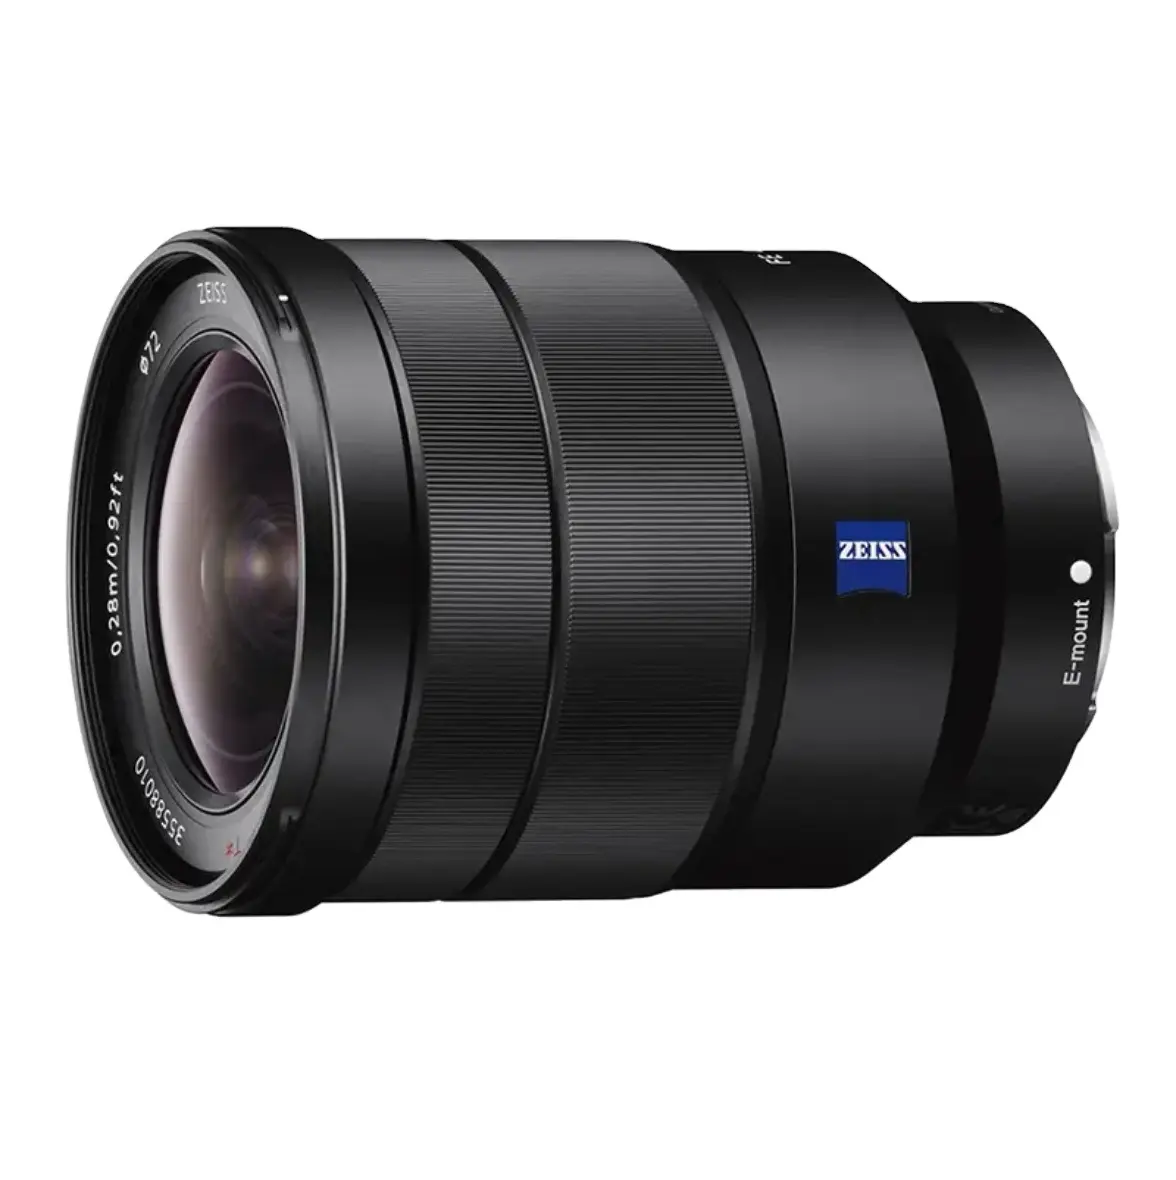 New Arrivals digital camera lenses Zeiss lens FE 24-70mm F4 ZA full-frame standard zoom e mount lens